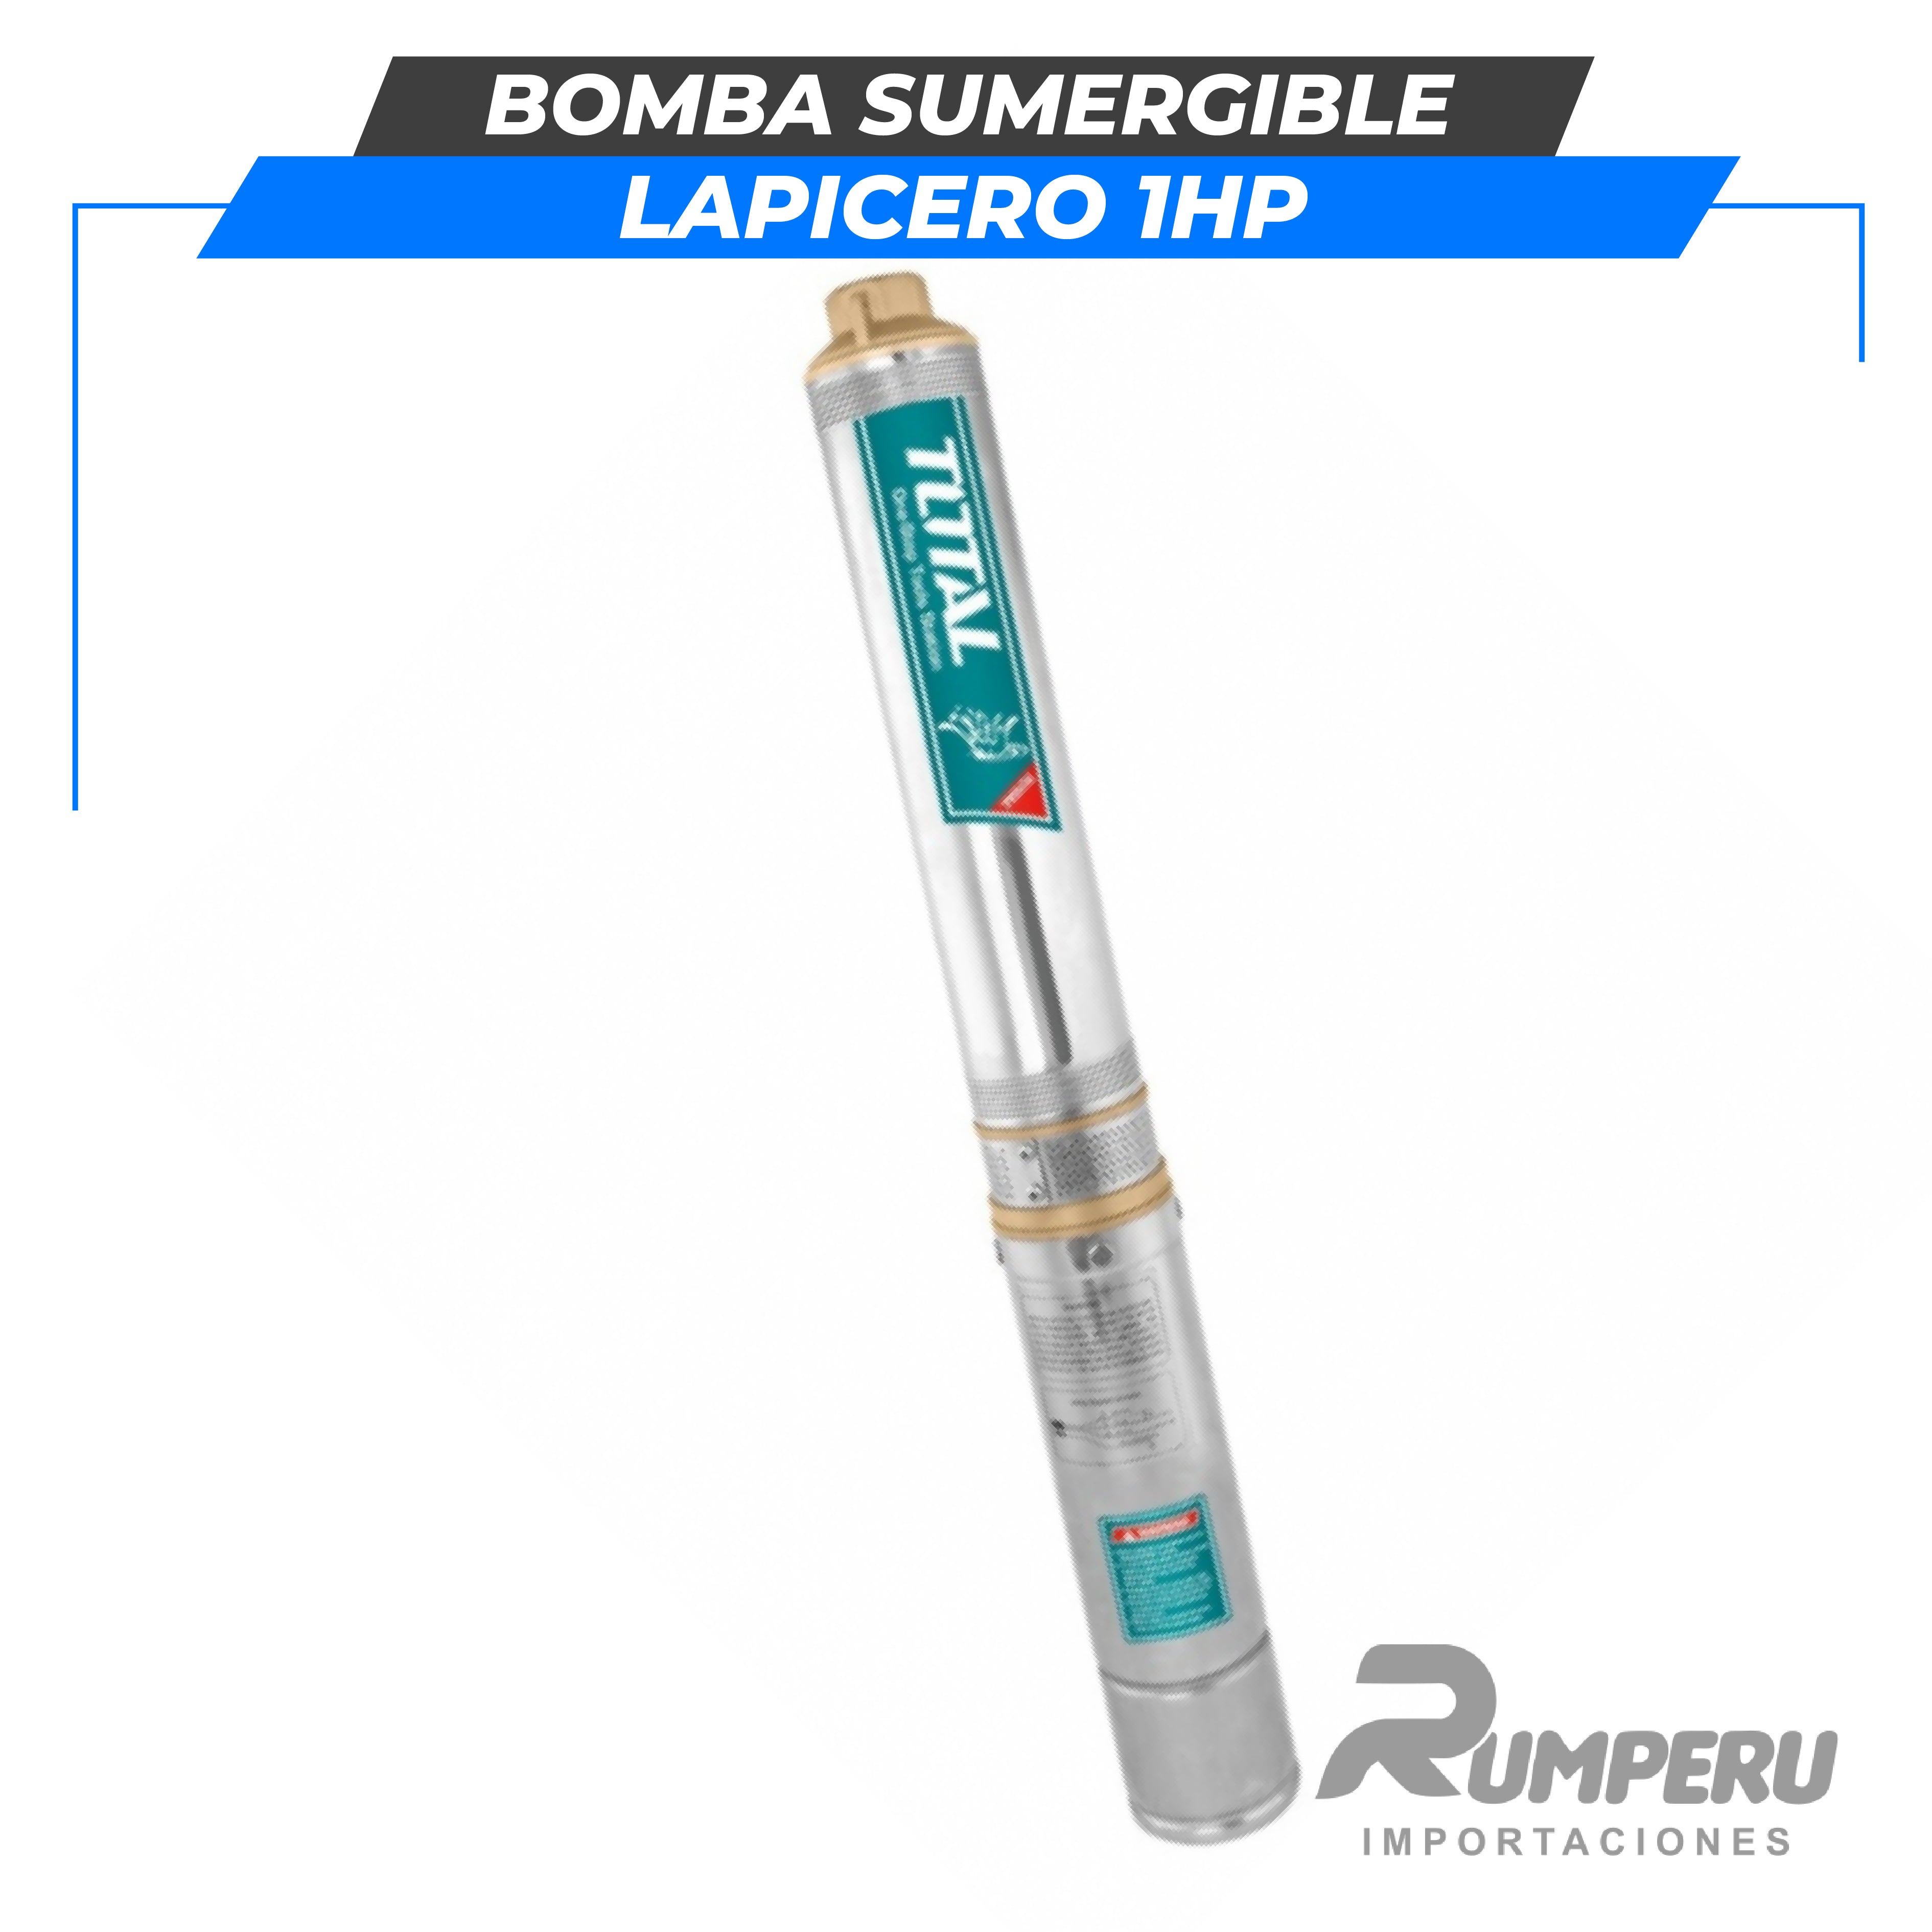 Bomba sumergible lapicero 1HP